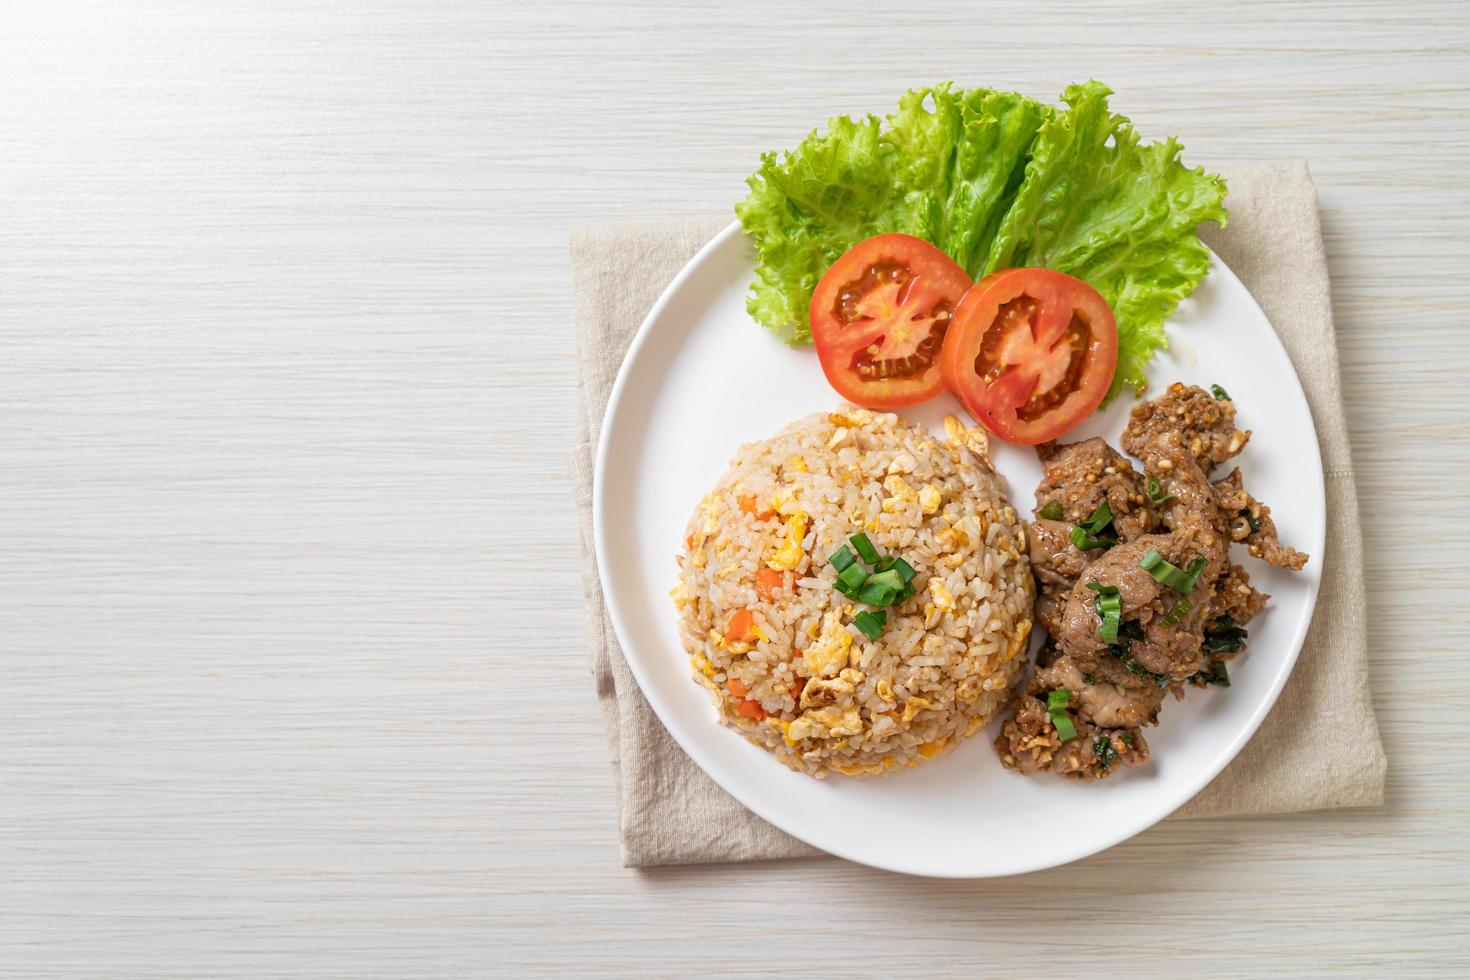 gebratener Reis mit gegrilltem Schweinefleisch - asiatische Küche foto